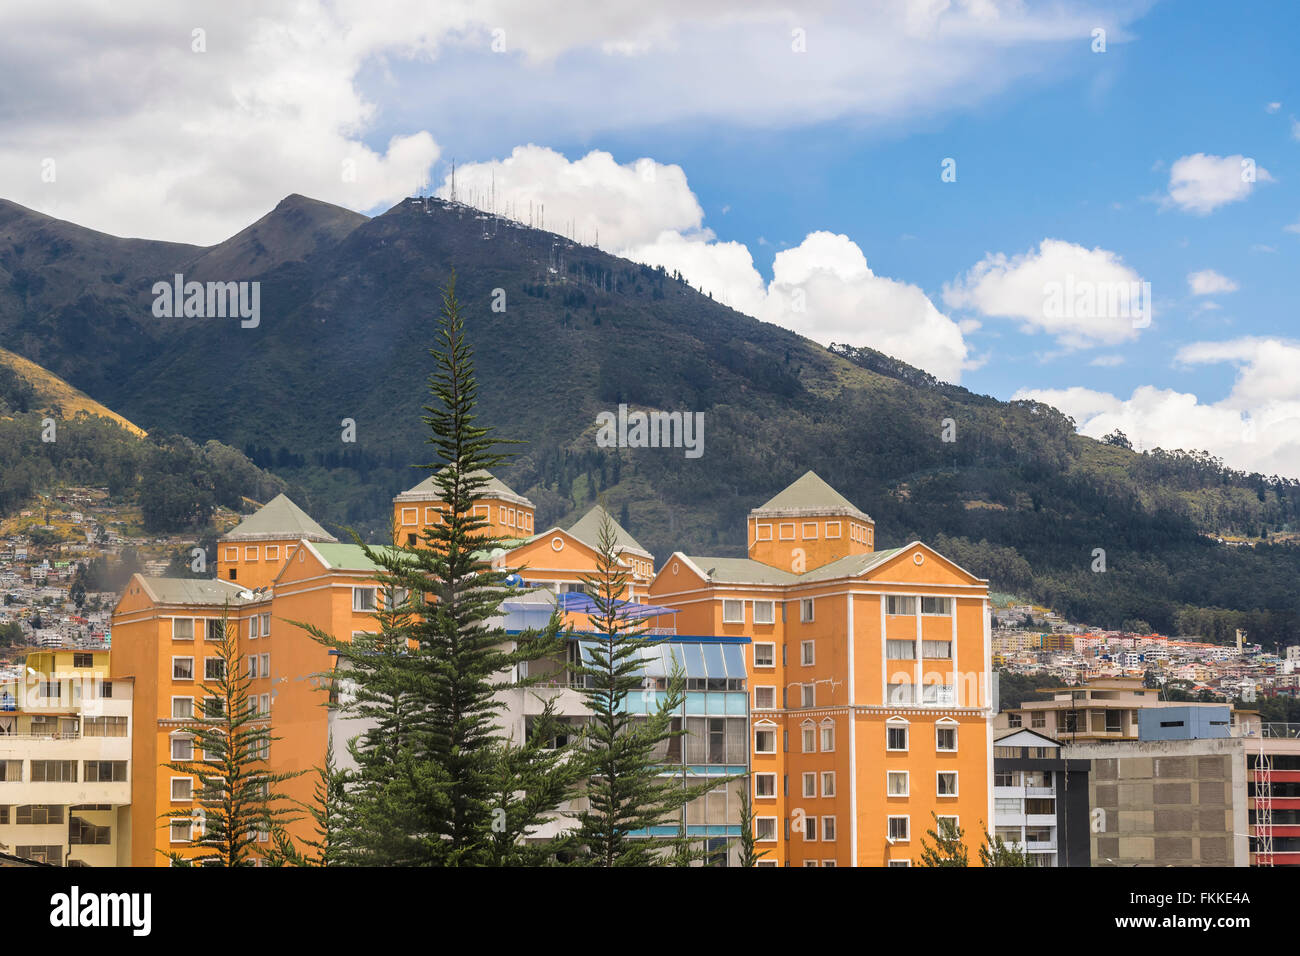 Giorno scena urbana foto degli edifici moderni e grandi montagne a sfondo in un quartiere della città di Quito, capitale dell'Ecuador in Foto Stock